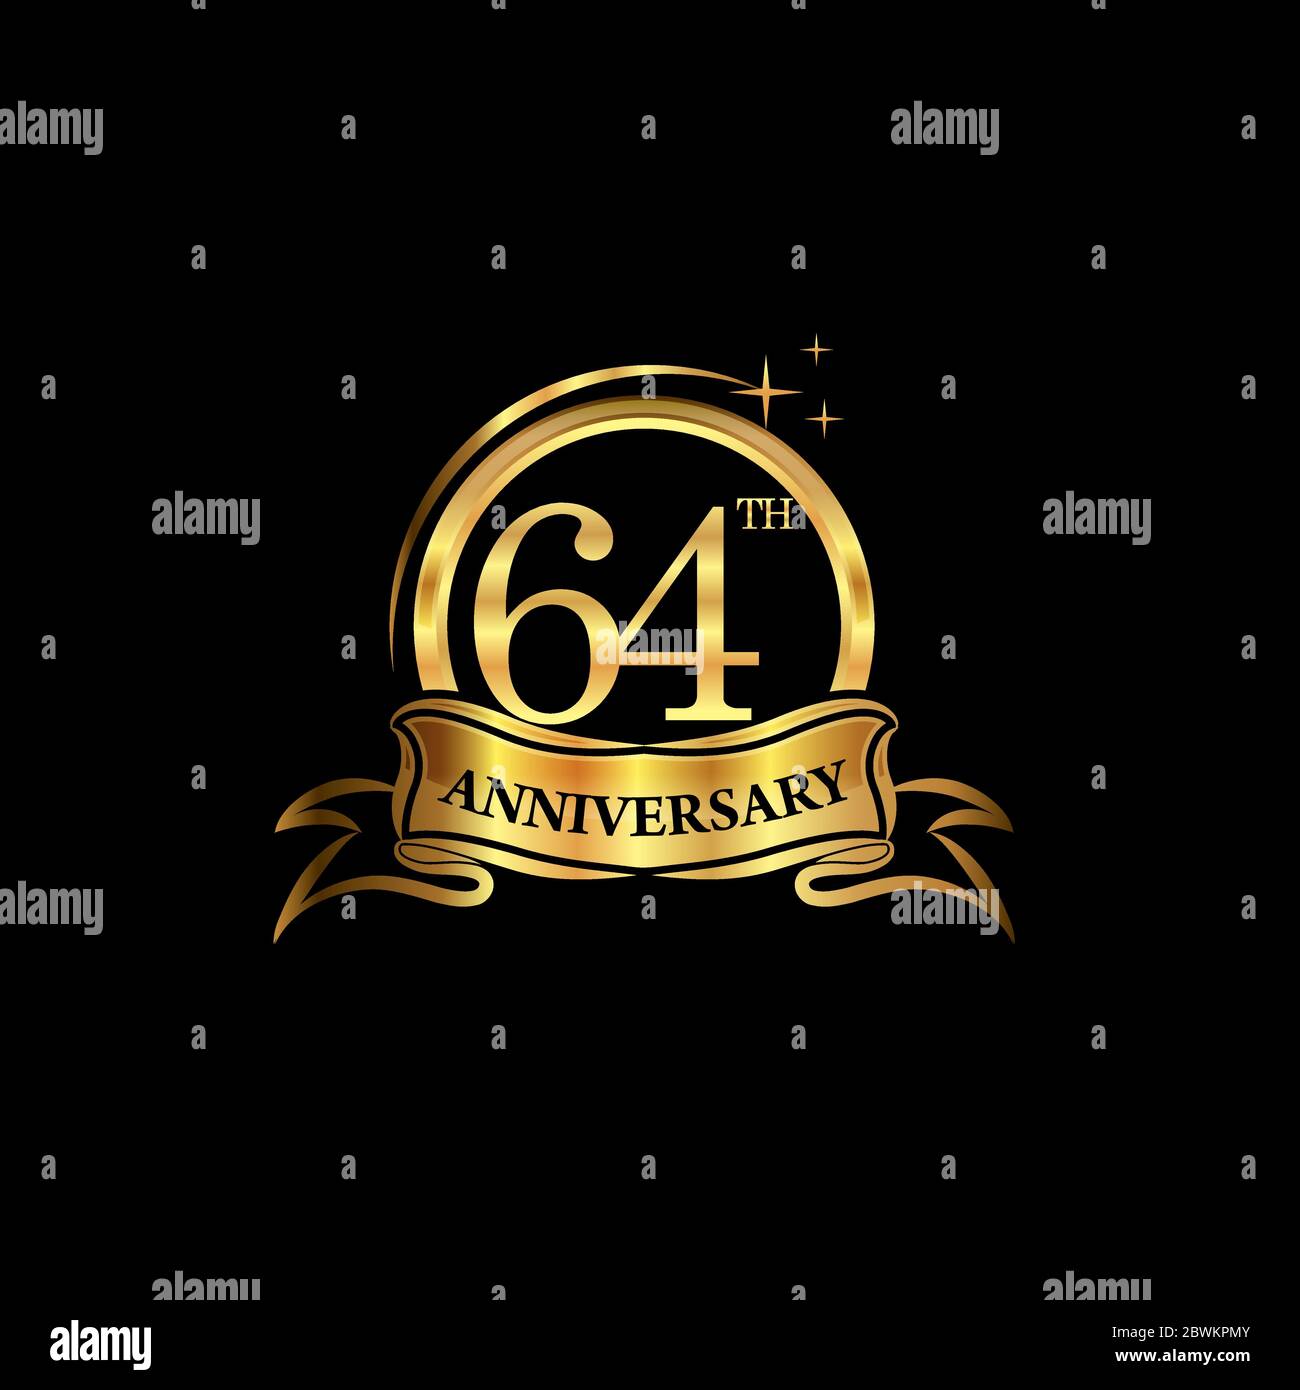 logo du 64ème anniversaire couleur dorée avec anneau et ruban doré pour célébrer l'anniversaire. EPS10 Illustration de Vecteur